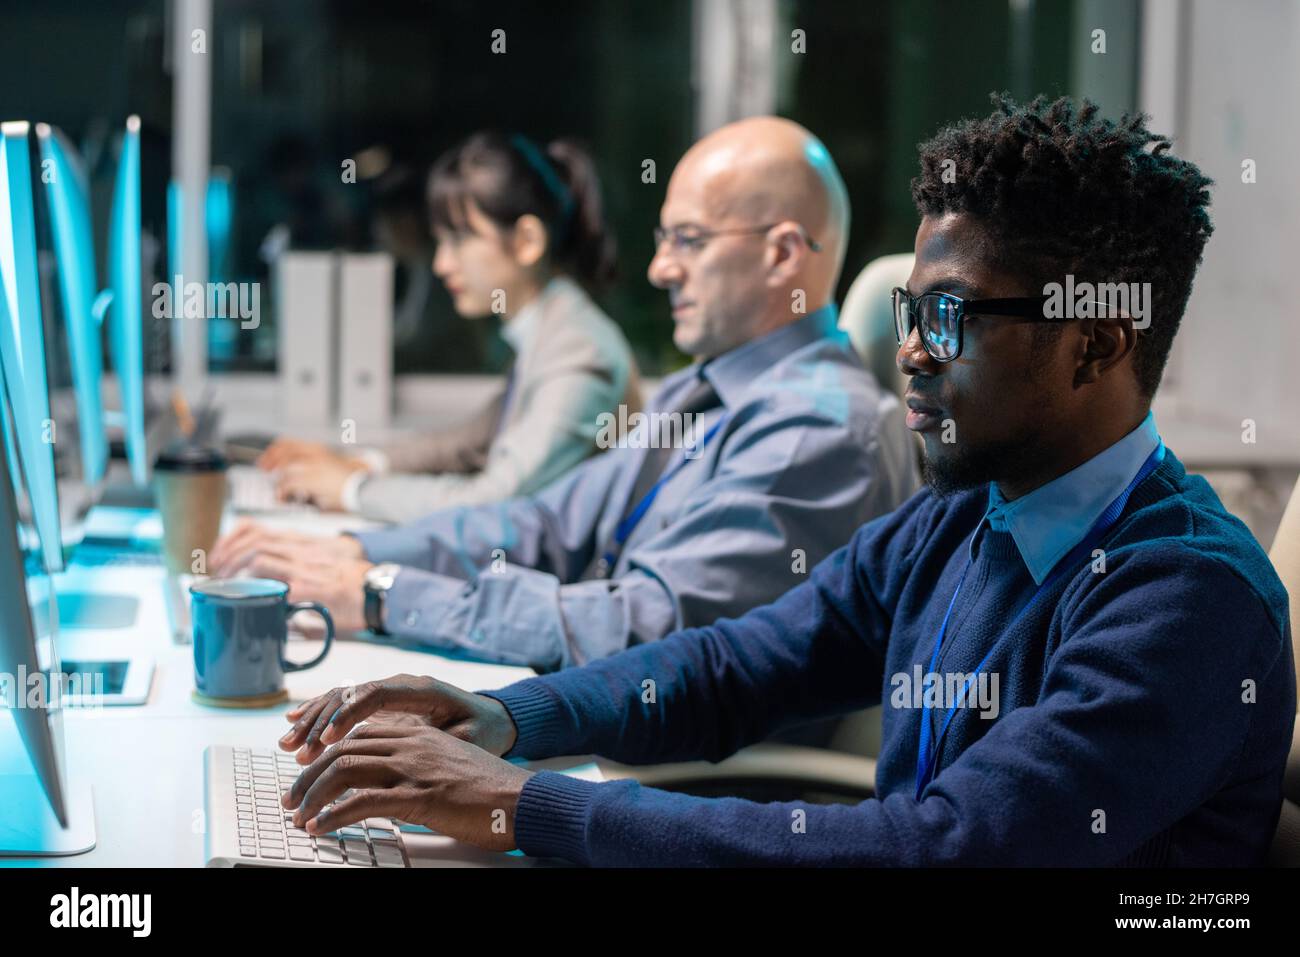 Rangée de programmeurs interculturels contemporains travaillant sur de nouveaux logiciels devant des moniteurs d'ordinateur au bureau Banque D'Images